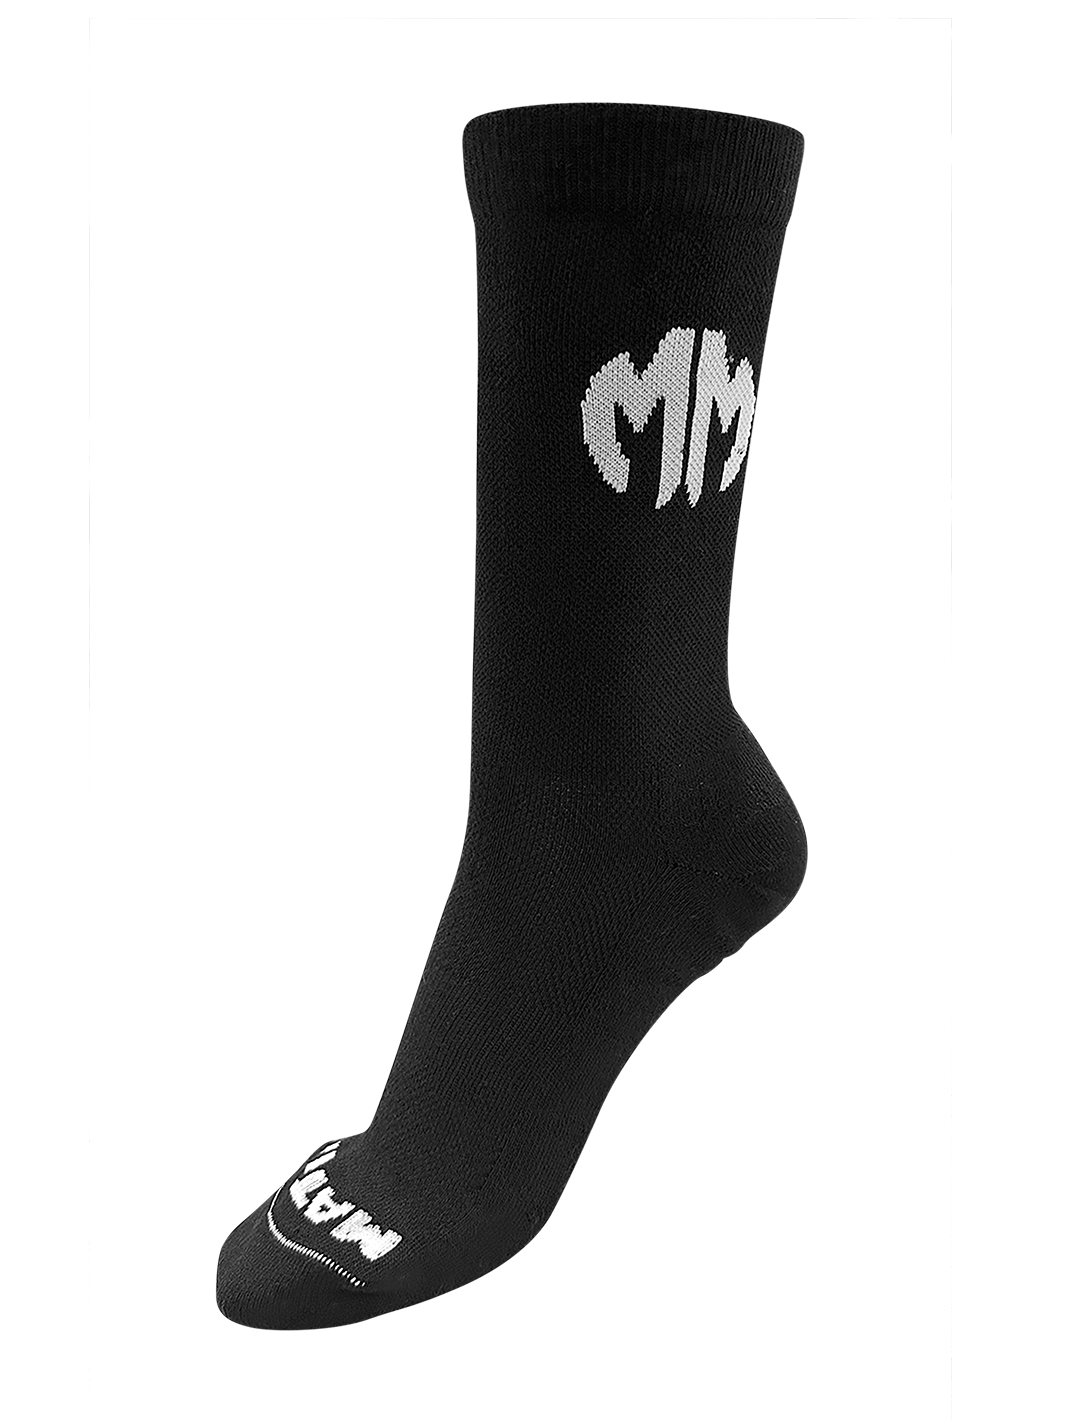 The MM Socks – Matman Wrestling Company